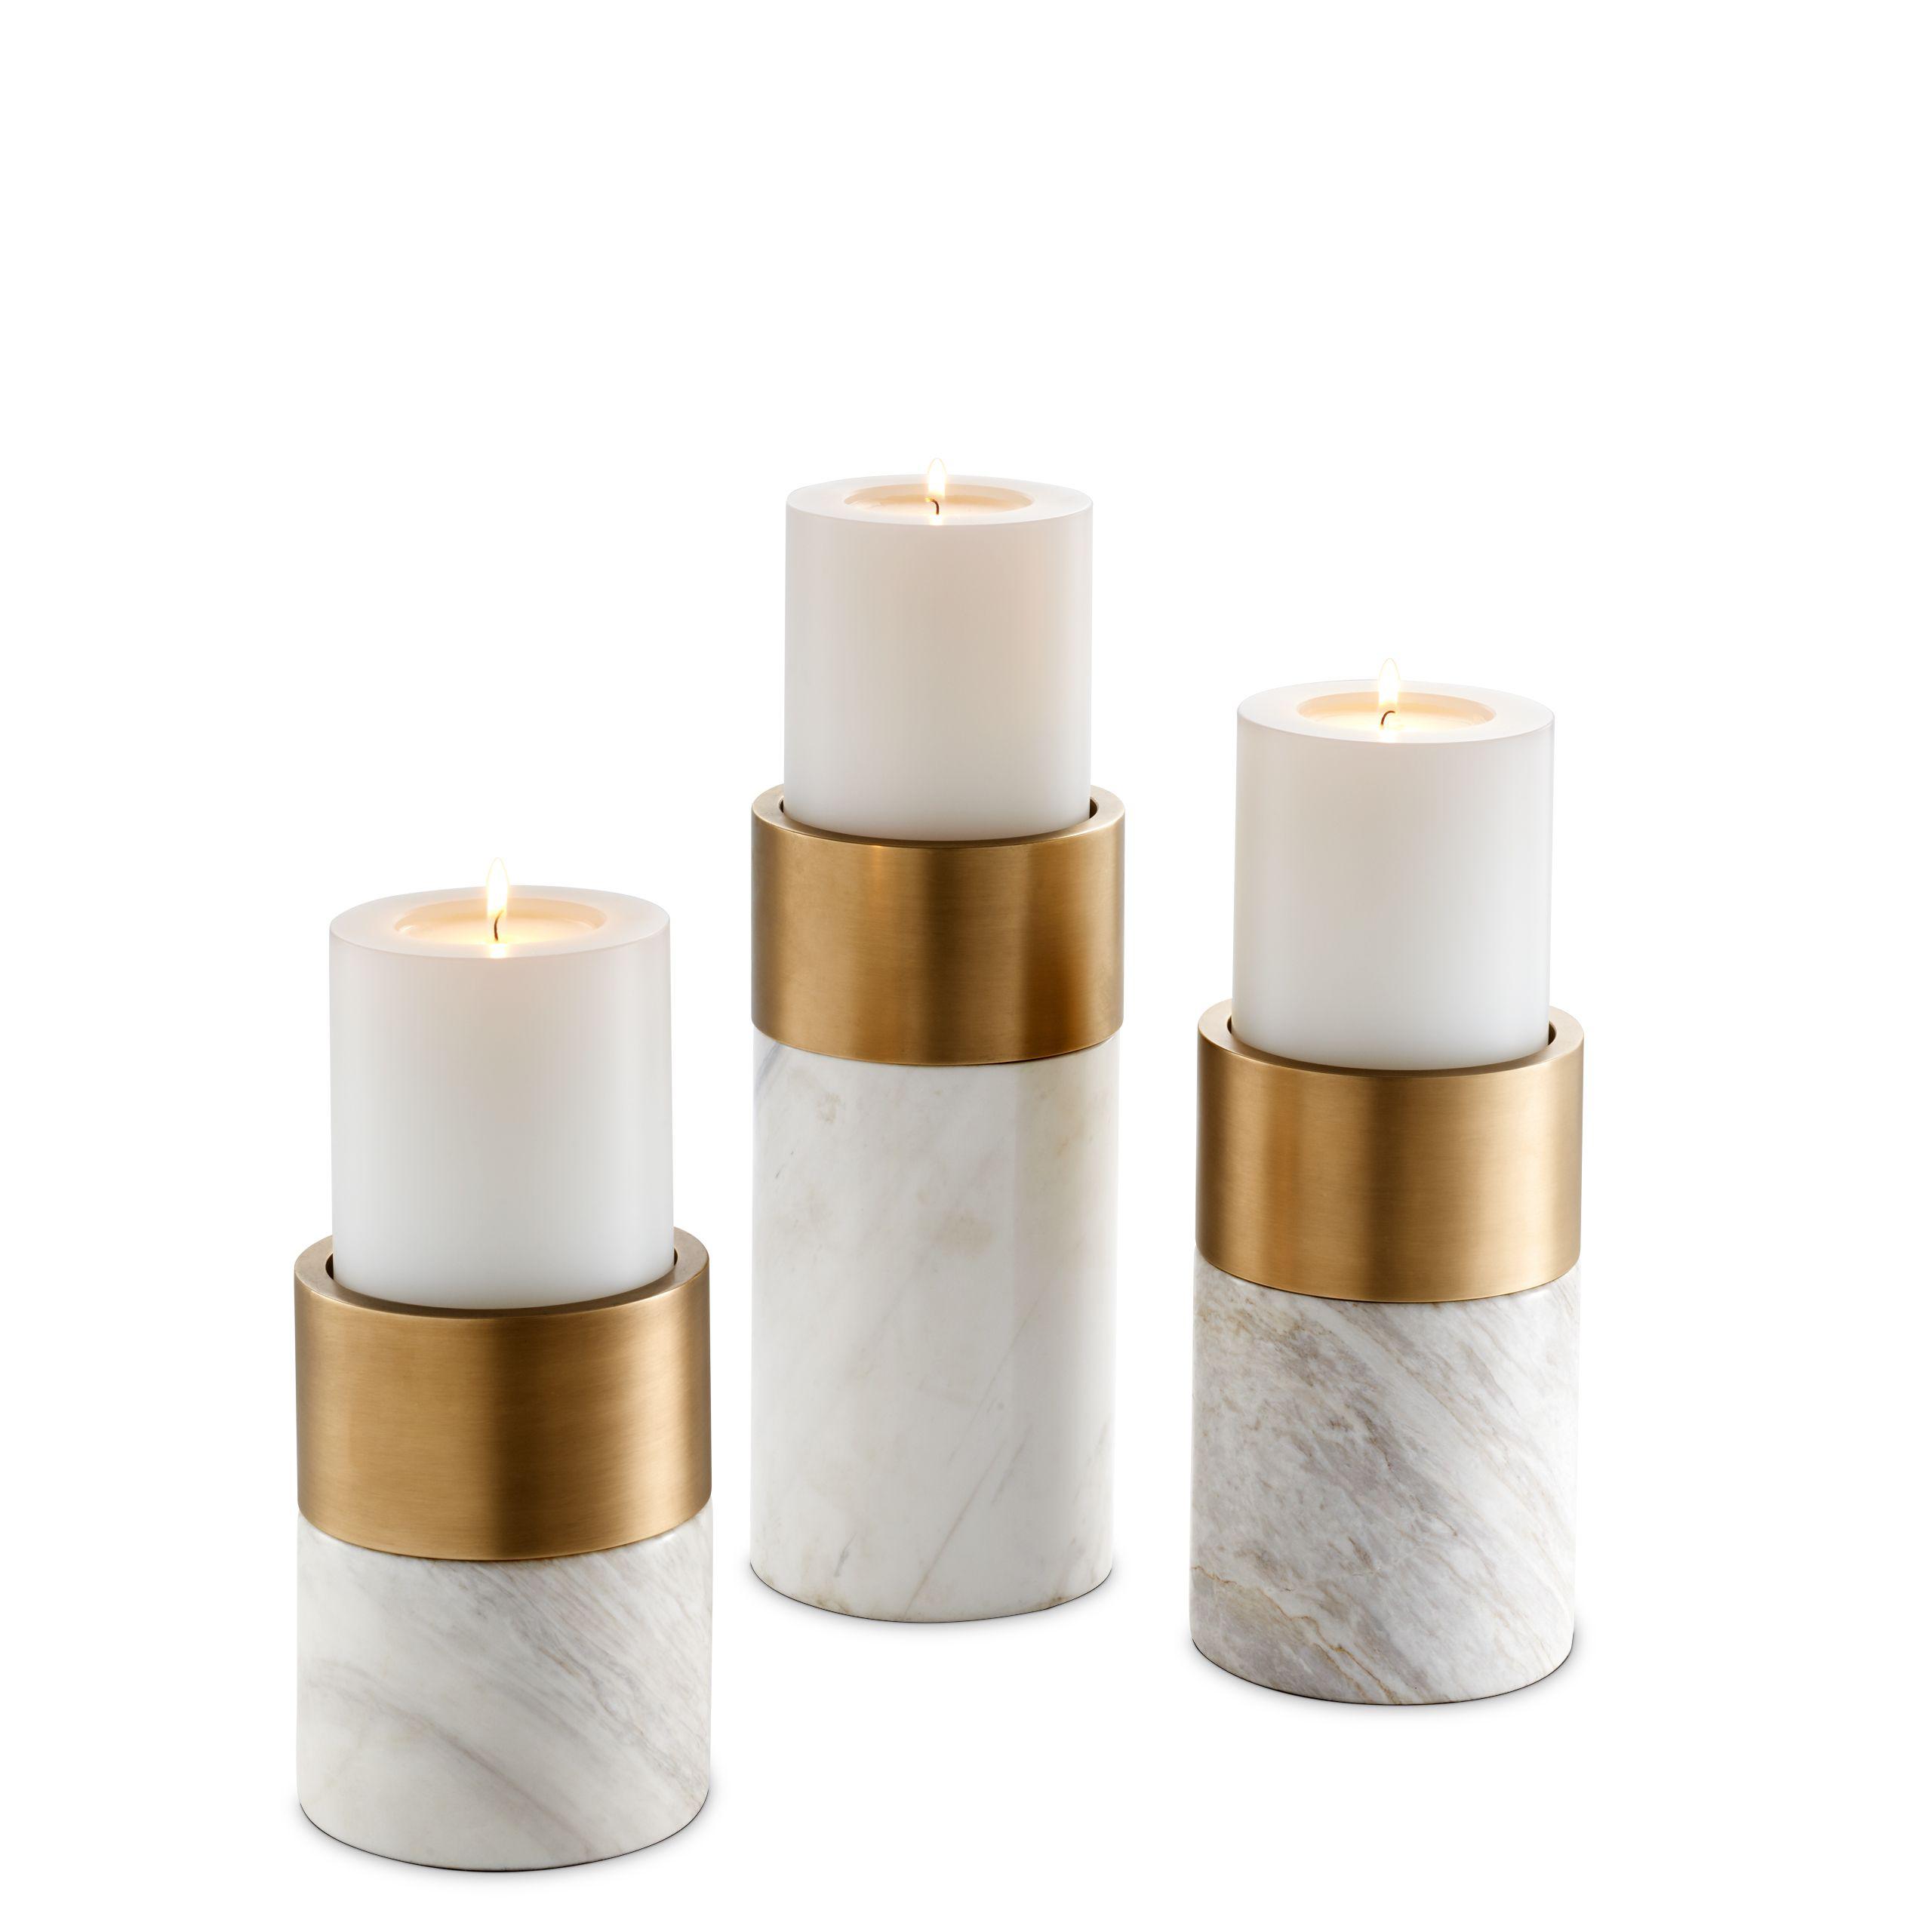 Купить Подсвечник Candle Holder Sierra set of 3 в интернет-магазине roooms.ru